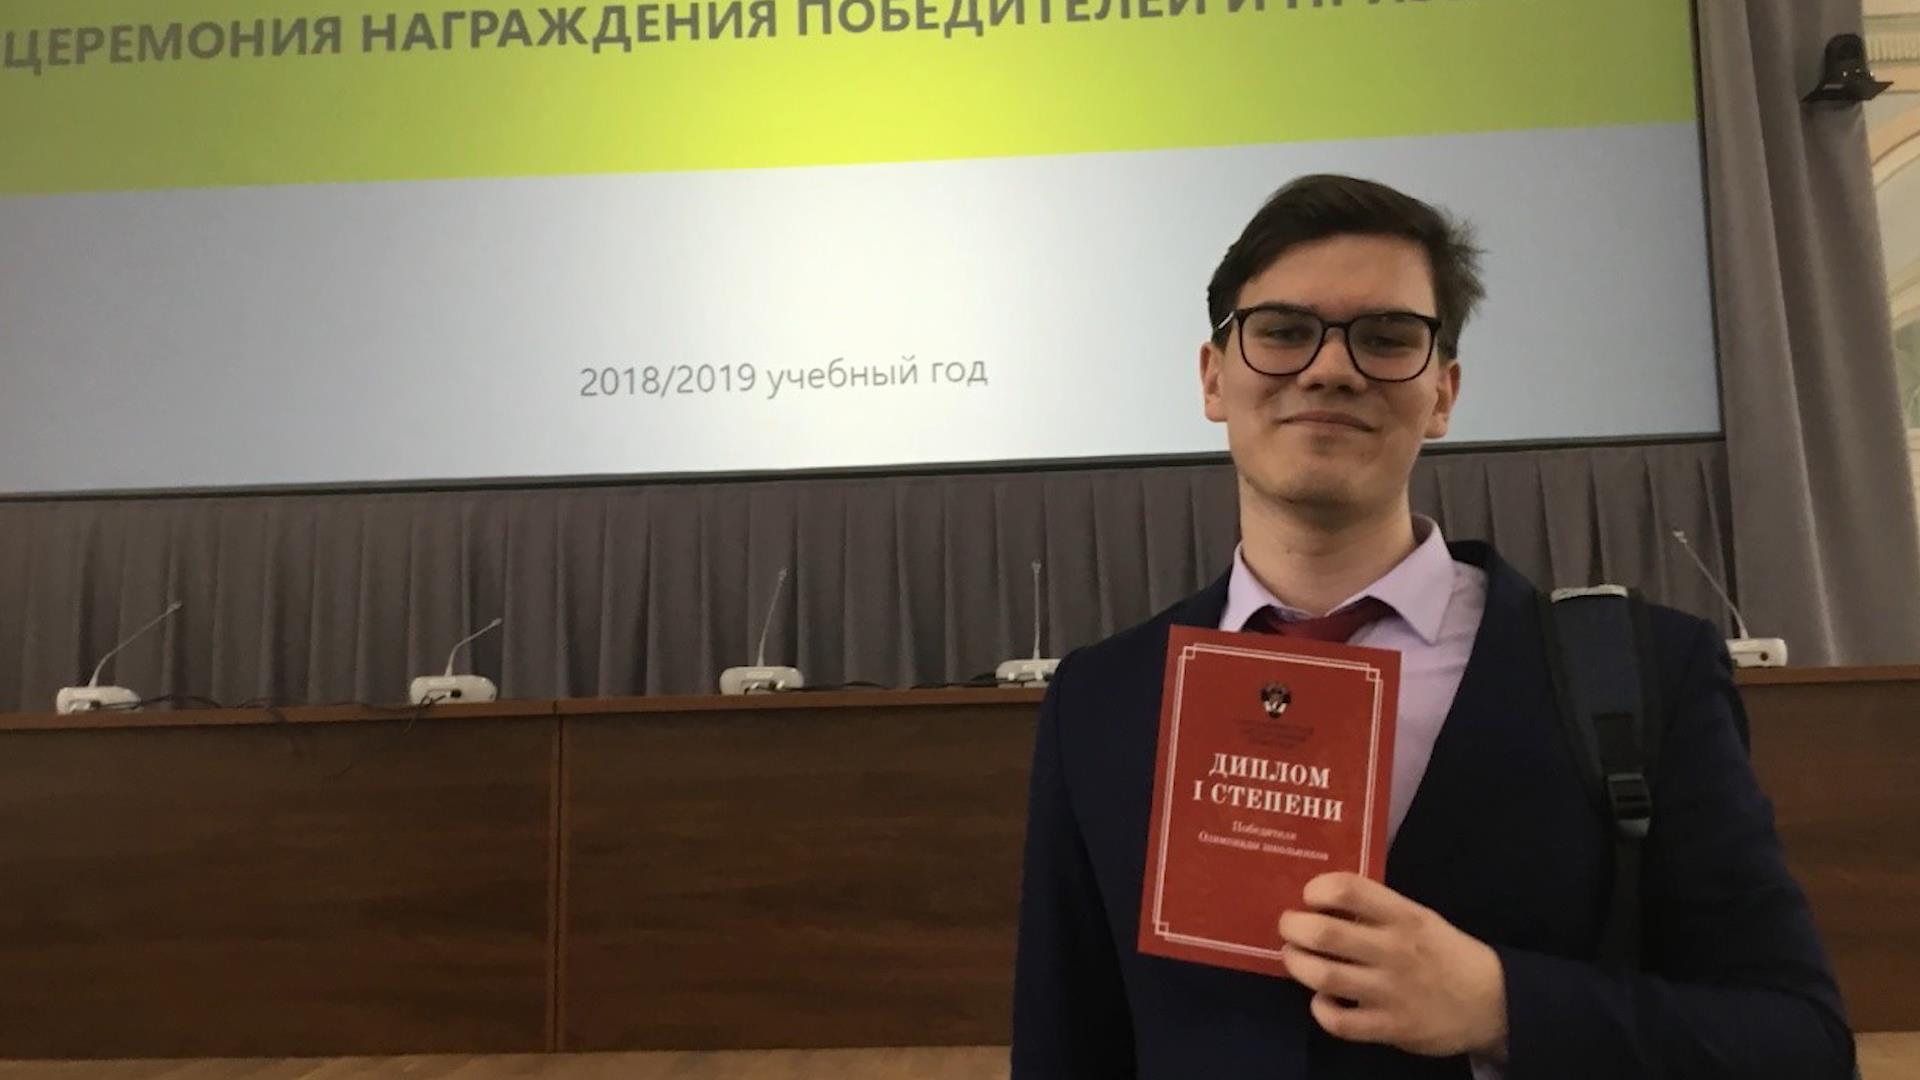 Студент из Костромской области получил грант Президента 